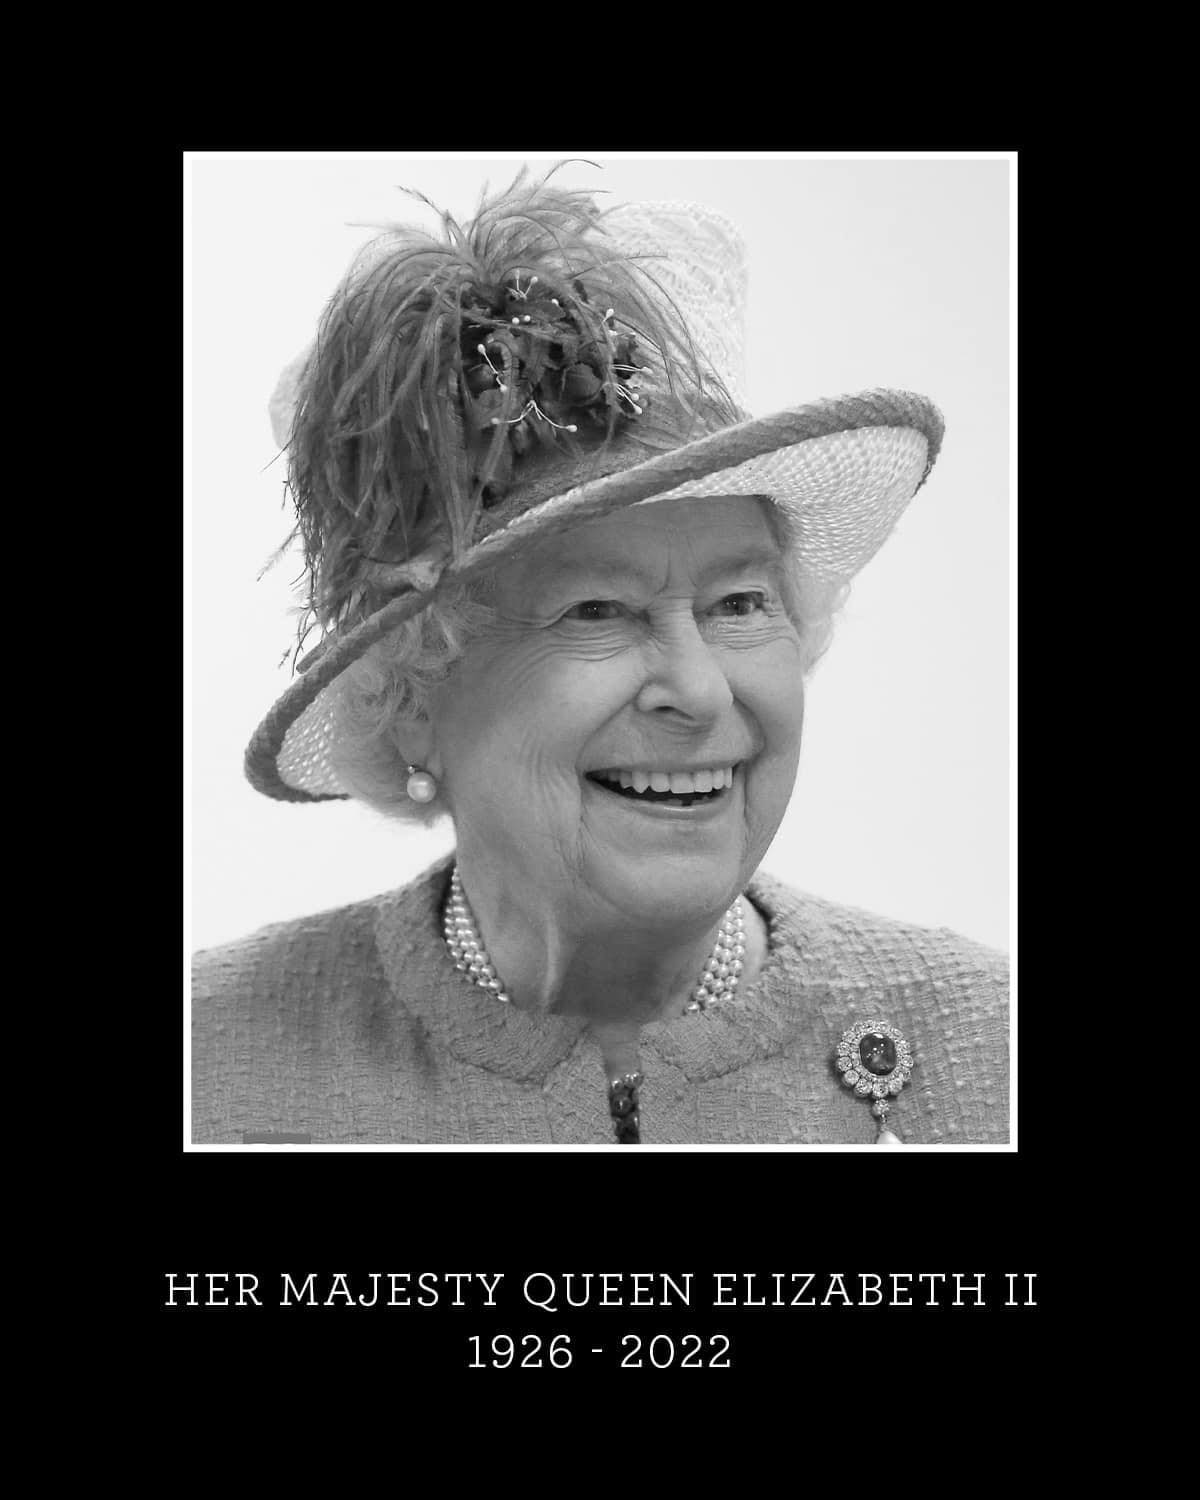 HM Queen Elizabeth II 1926 - 2022